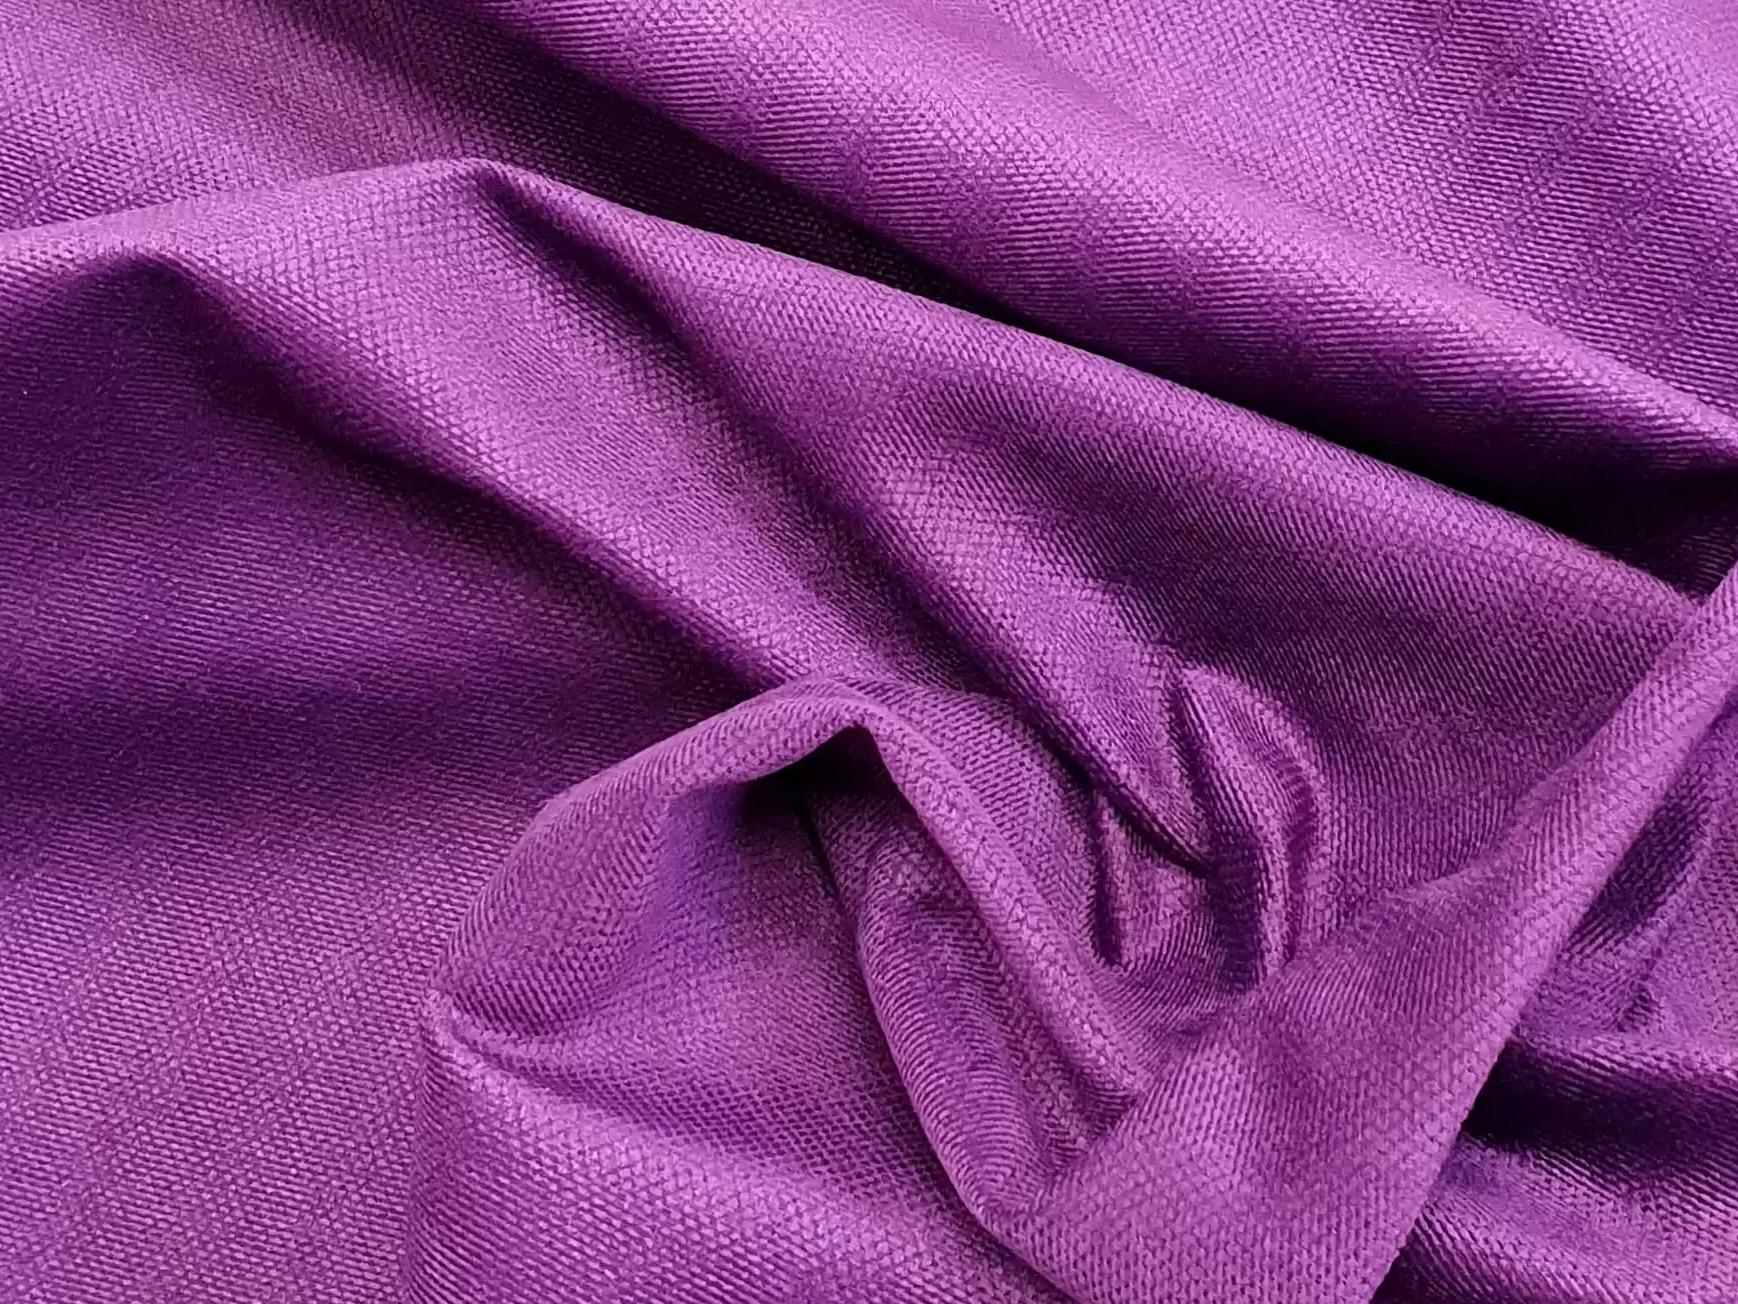 Интерьерная кровать Далия 160 (Фиолетовый)